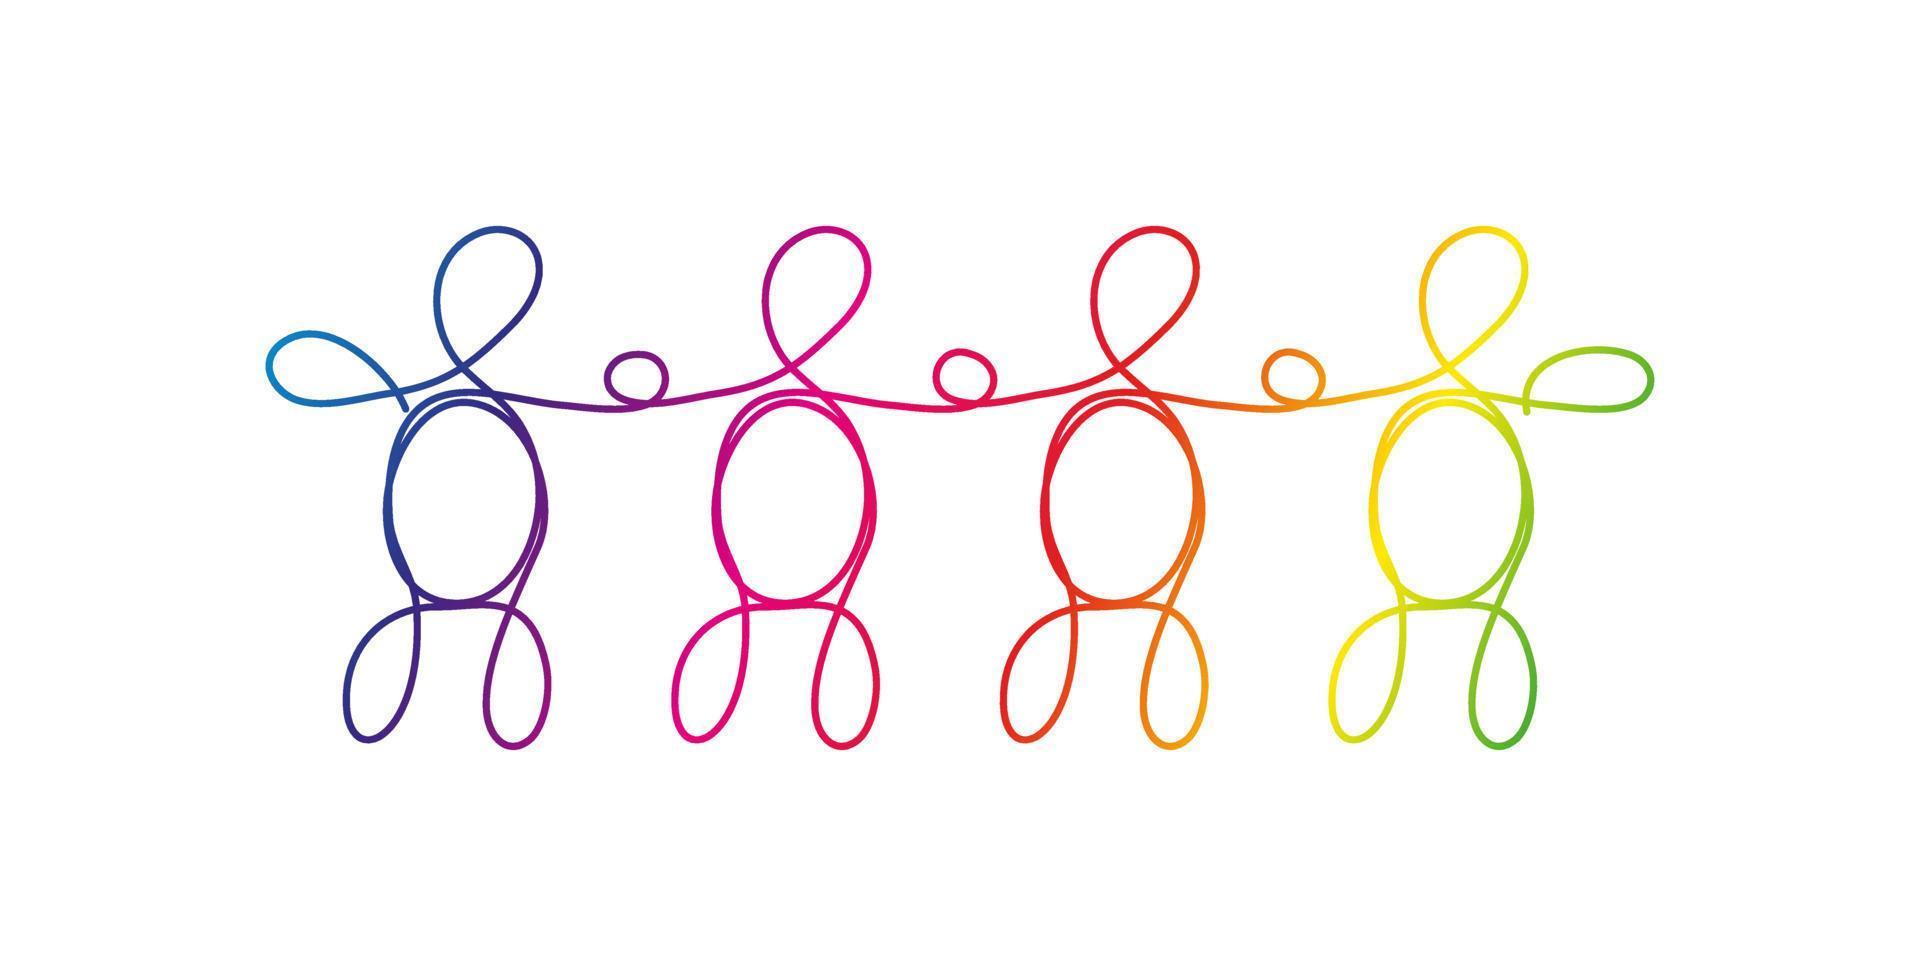 Strichzeichnungen Vielfalt, lgbtq-Konzept. Eine Gruppe von vier verschiedenen Personen, die mit einer Linie gezeichnet wurden, Regenbogenfarben auf Weiß. vektor